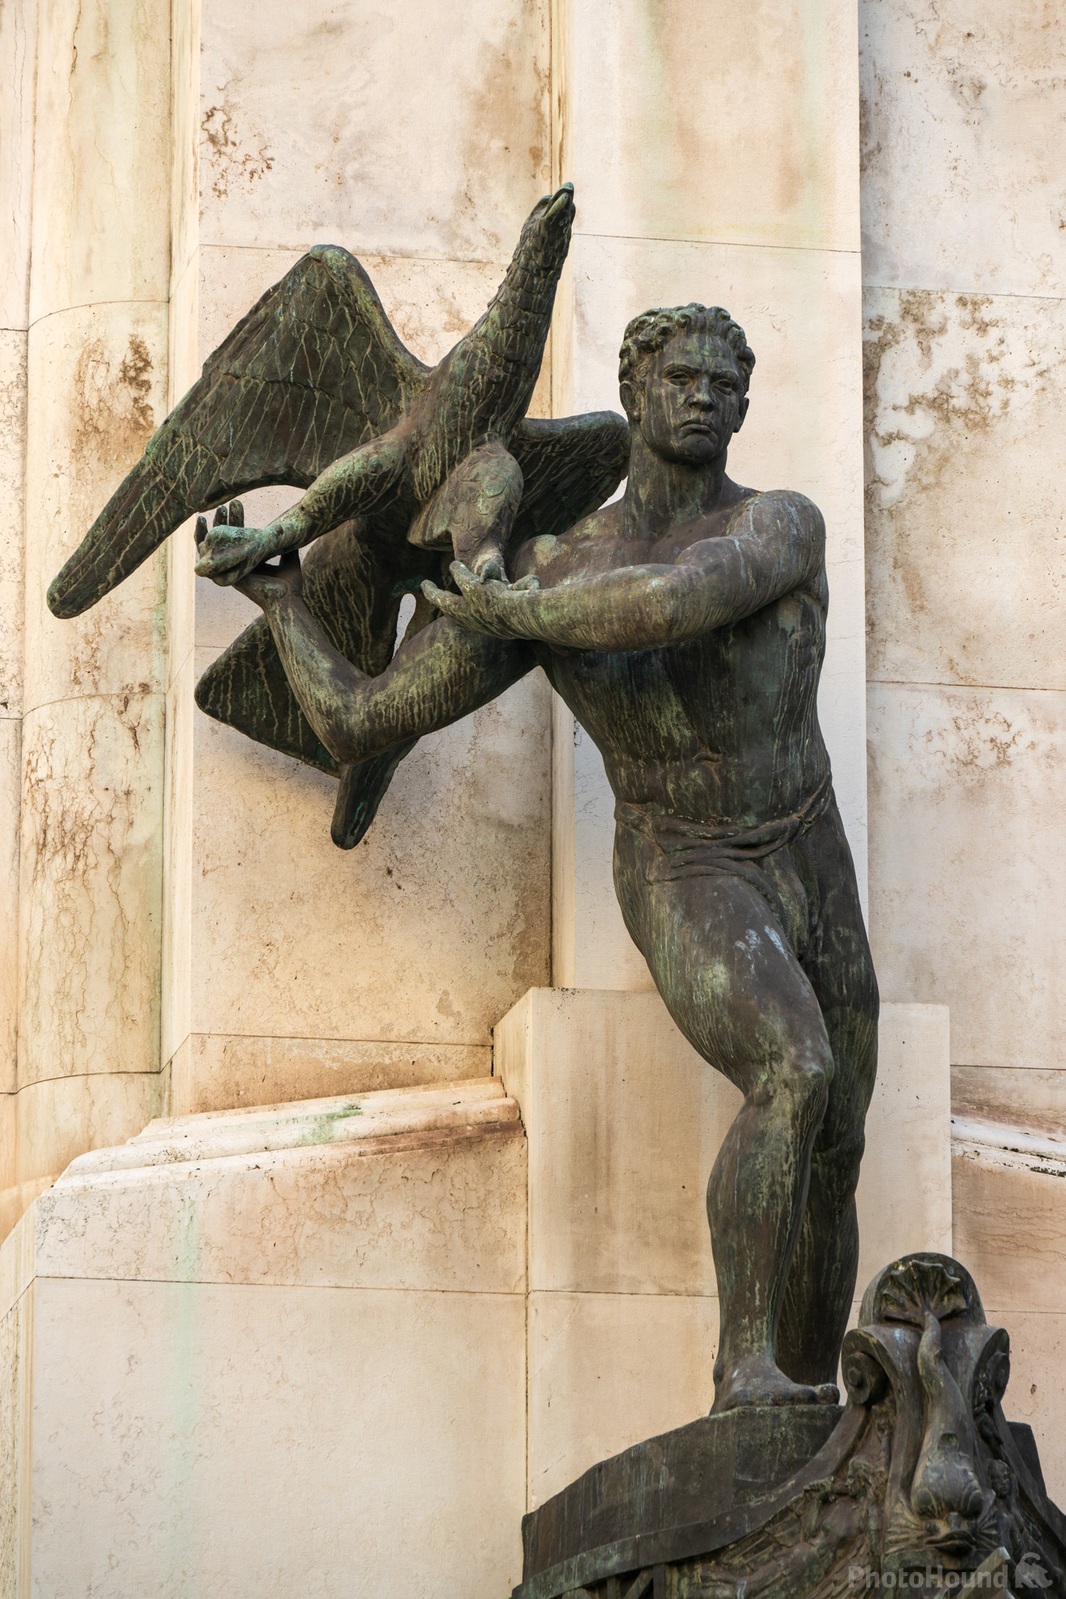 Image of Piazza della Vittoria by Luka Esenko